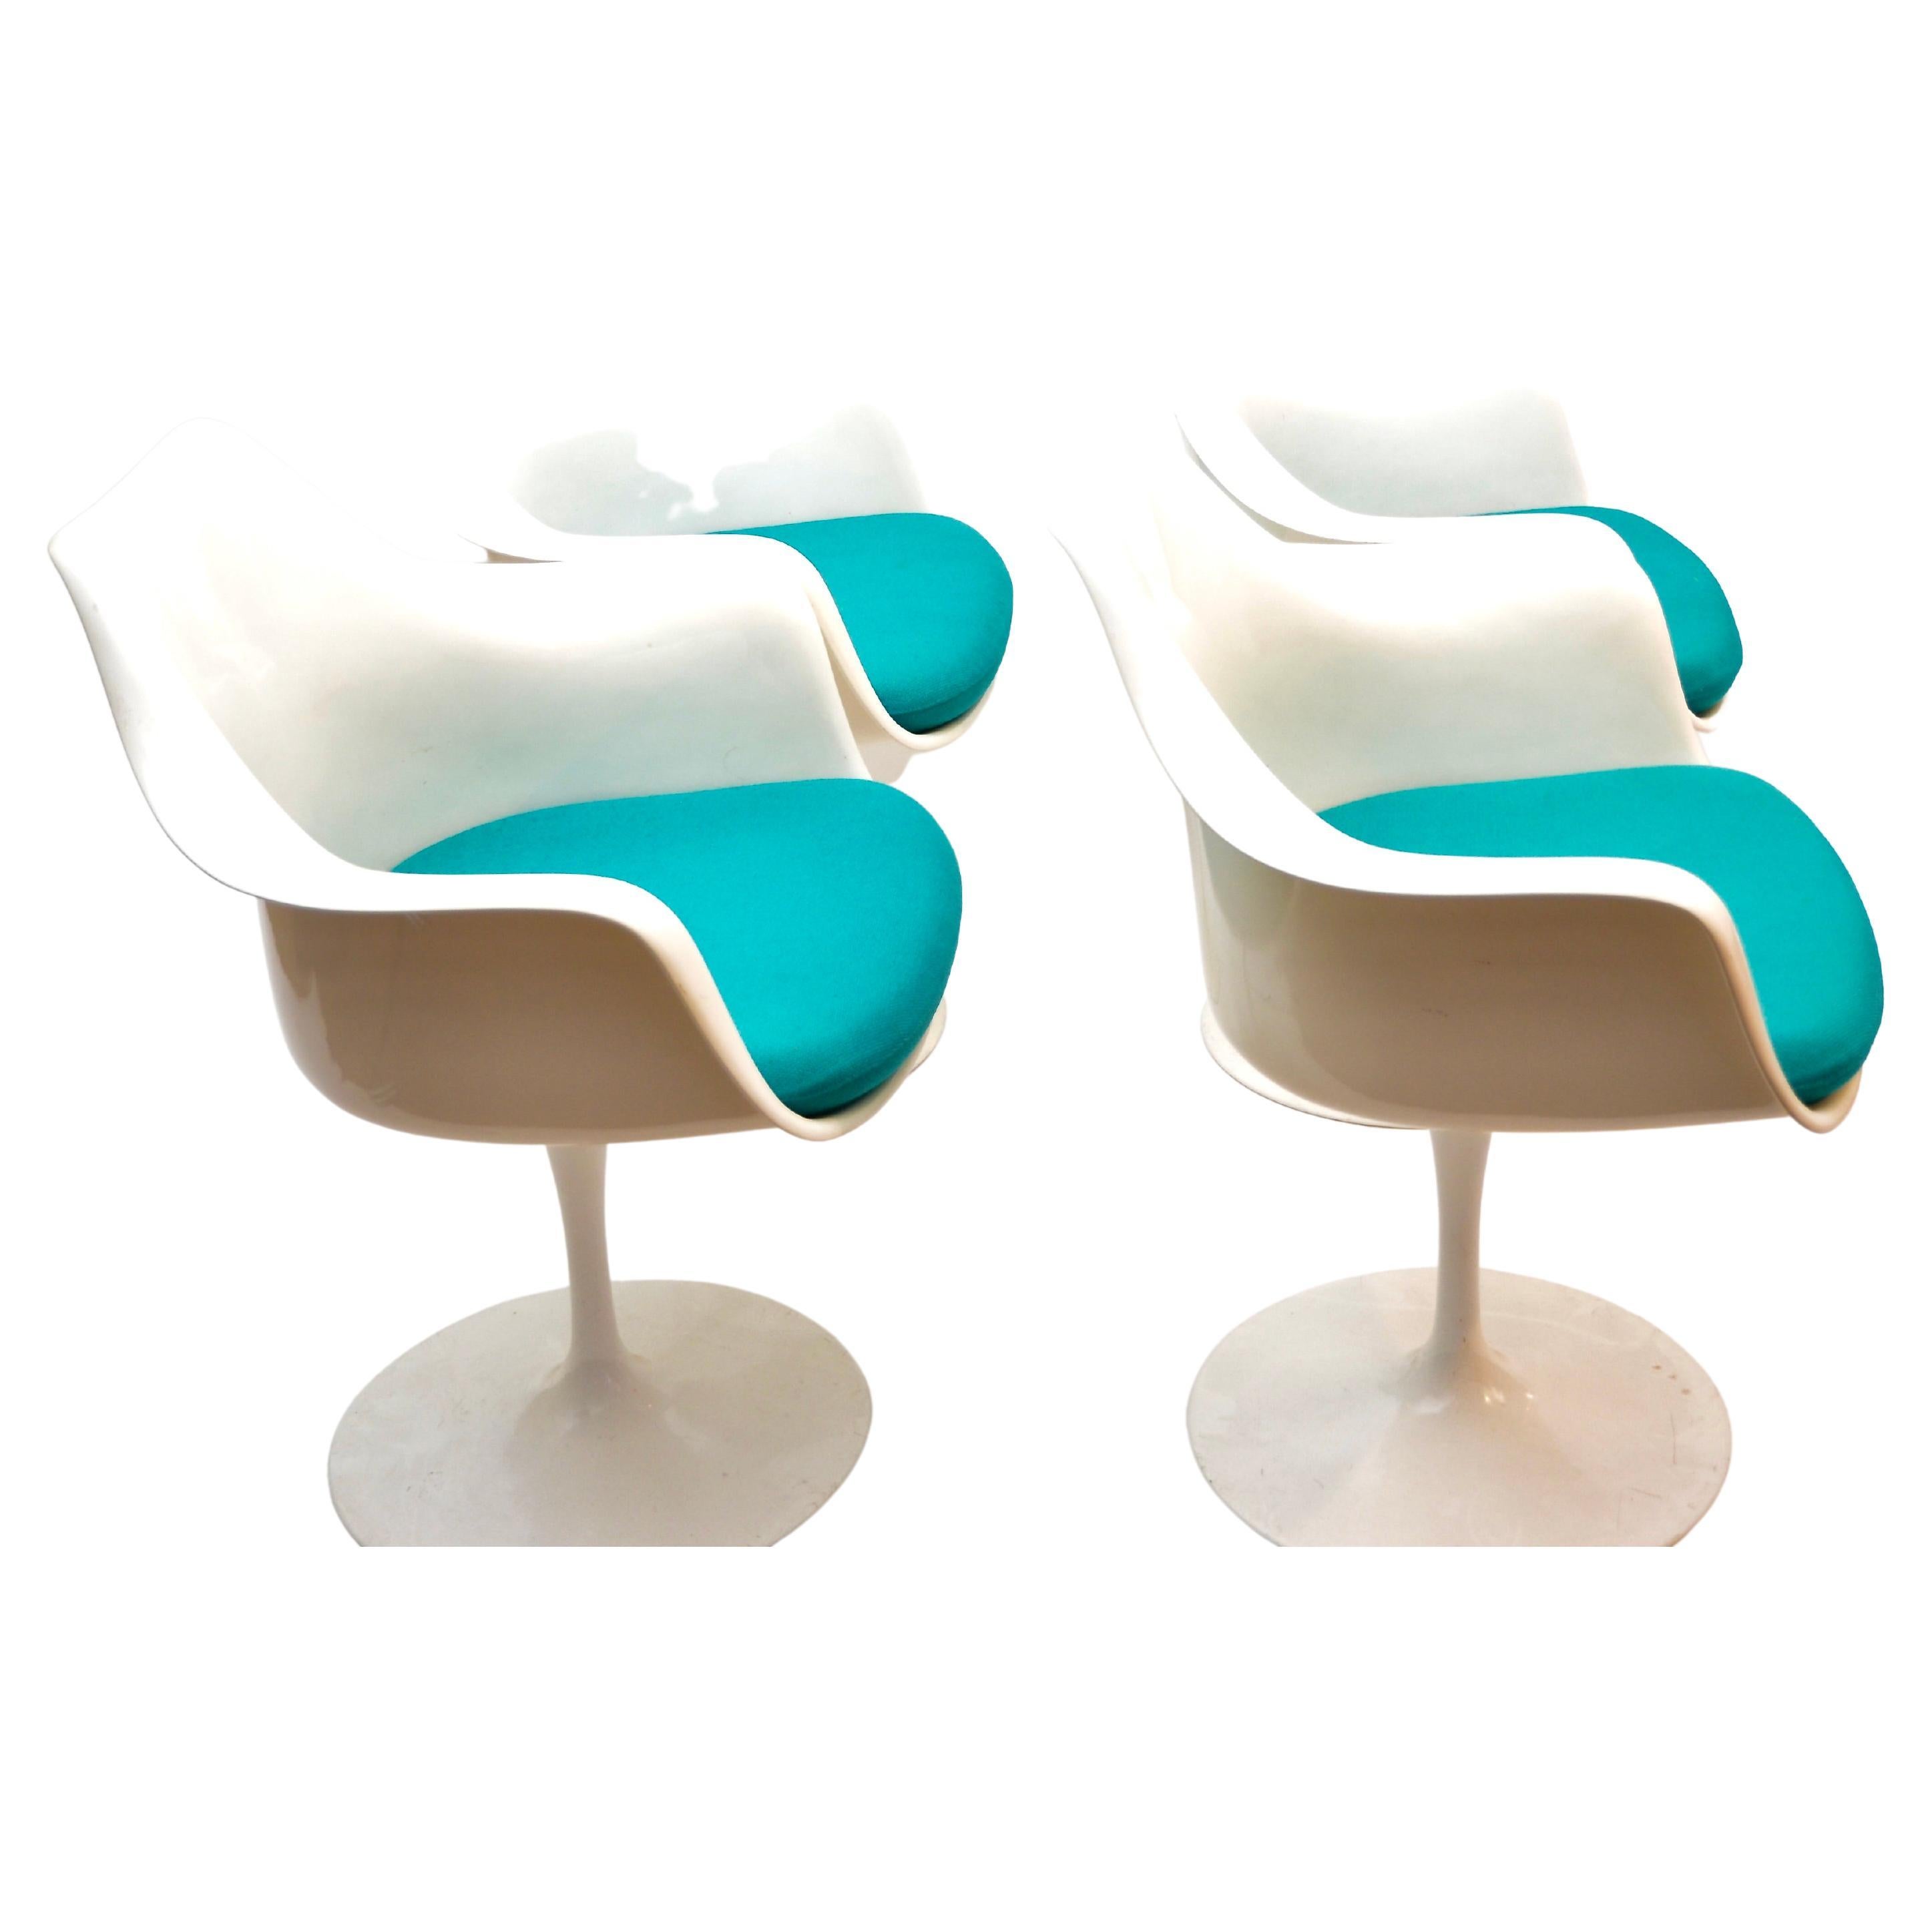 Fauteuil Tulip d'Eero Saarinen pour Knoll International. Coque en fibre de verre moulée et base en aluminium moulé. 
Sa forme organique reste intemporelle et élégante. 
Ensemble de 4 fauteuils.

Eero Saarinen était un designer industriel et un